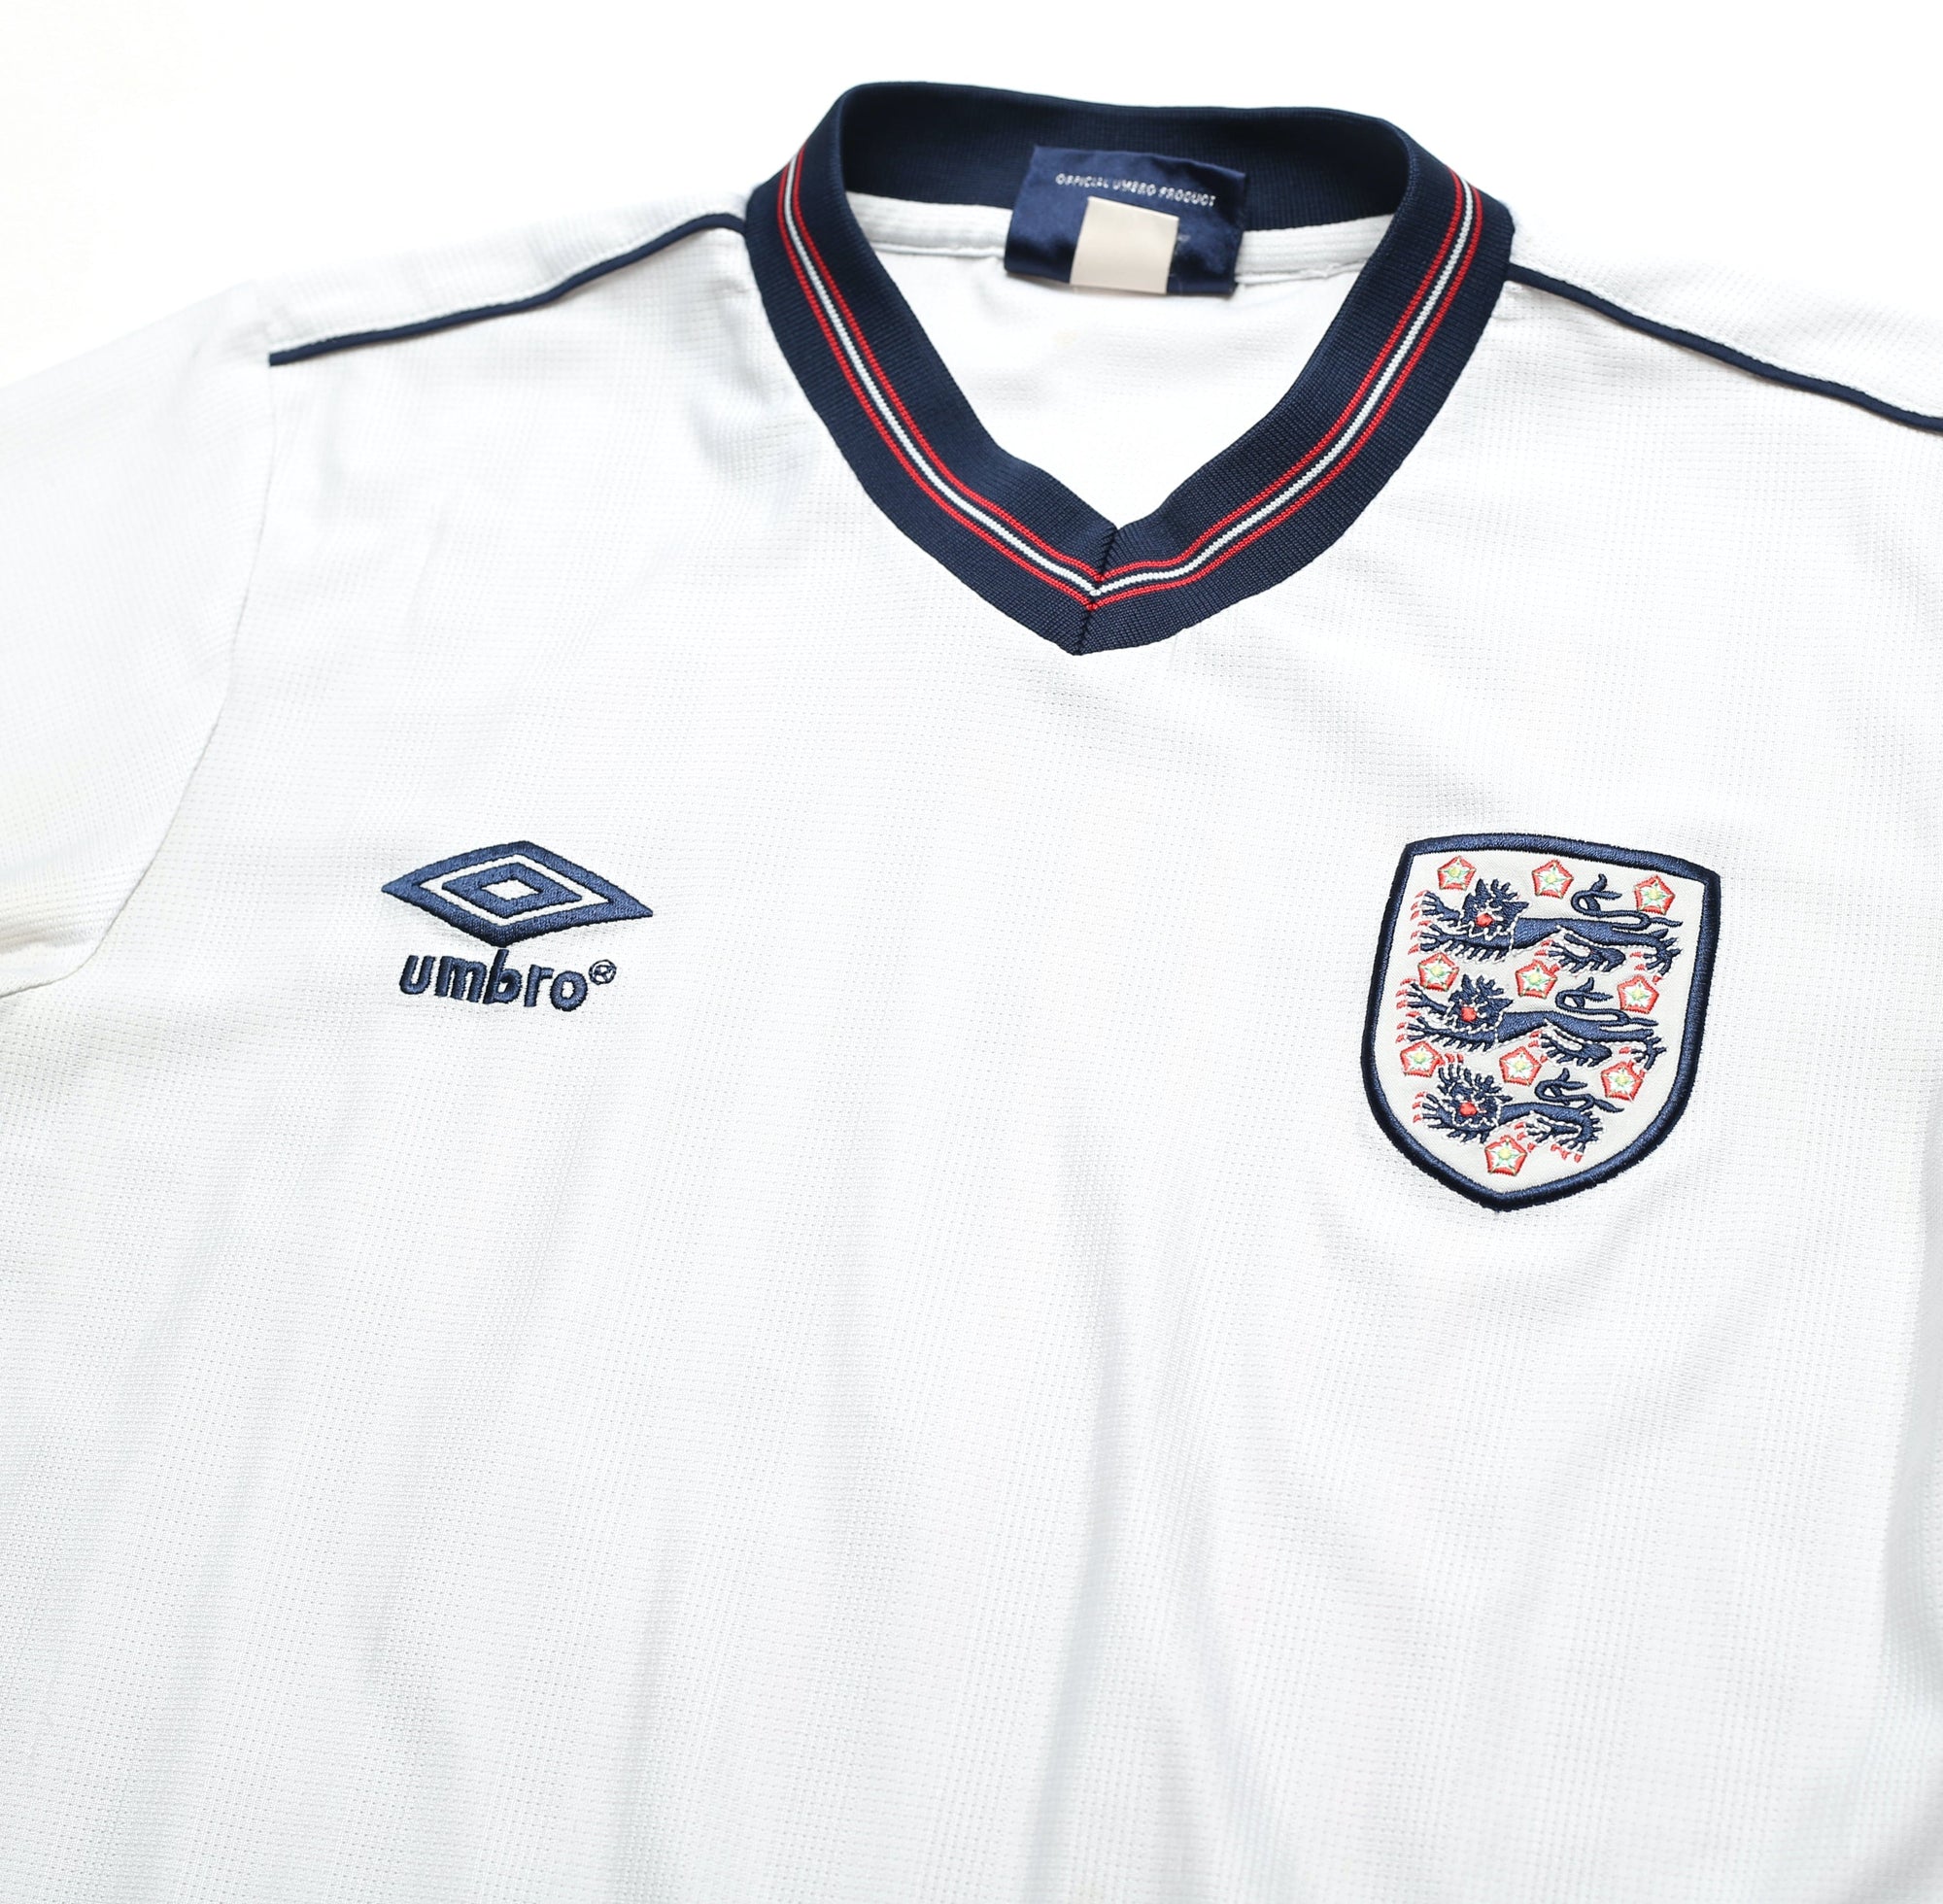 1986 LINEKER England #10 Retro Umbro Home Football Shirt (S) Mexico World Cup